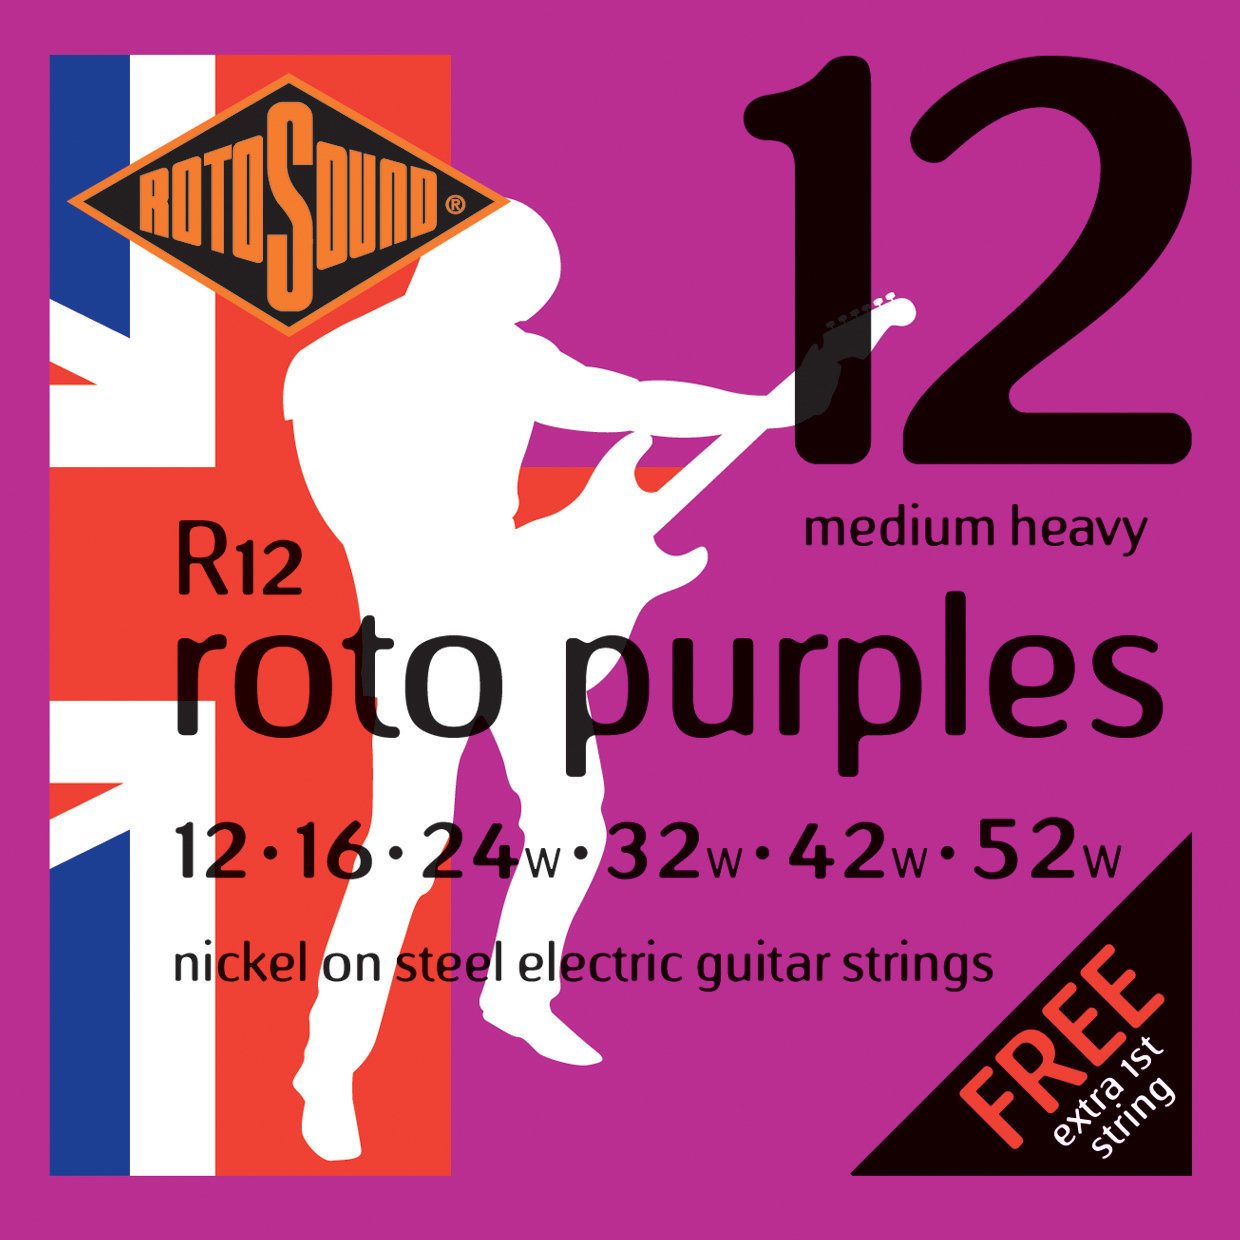 E-guitar strings Rotosound R12